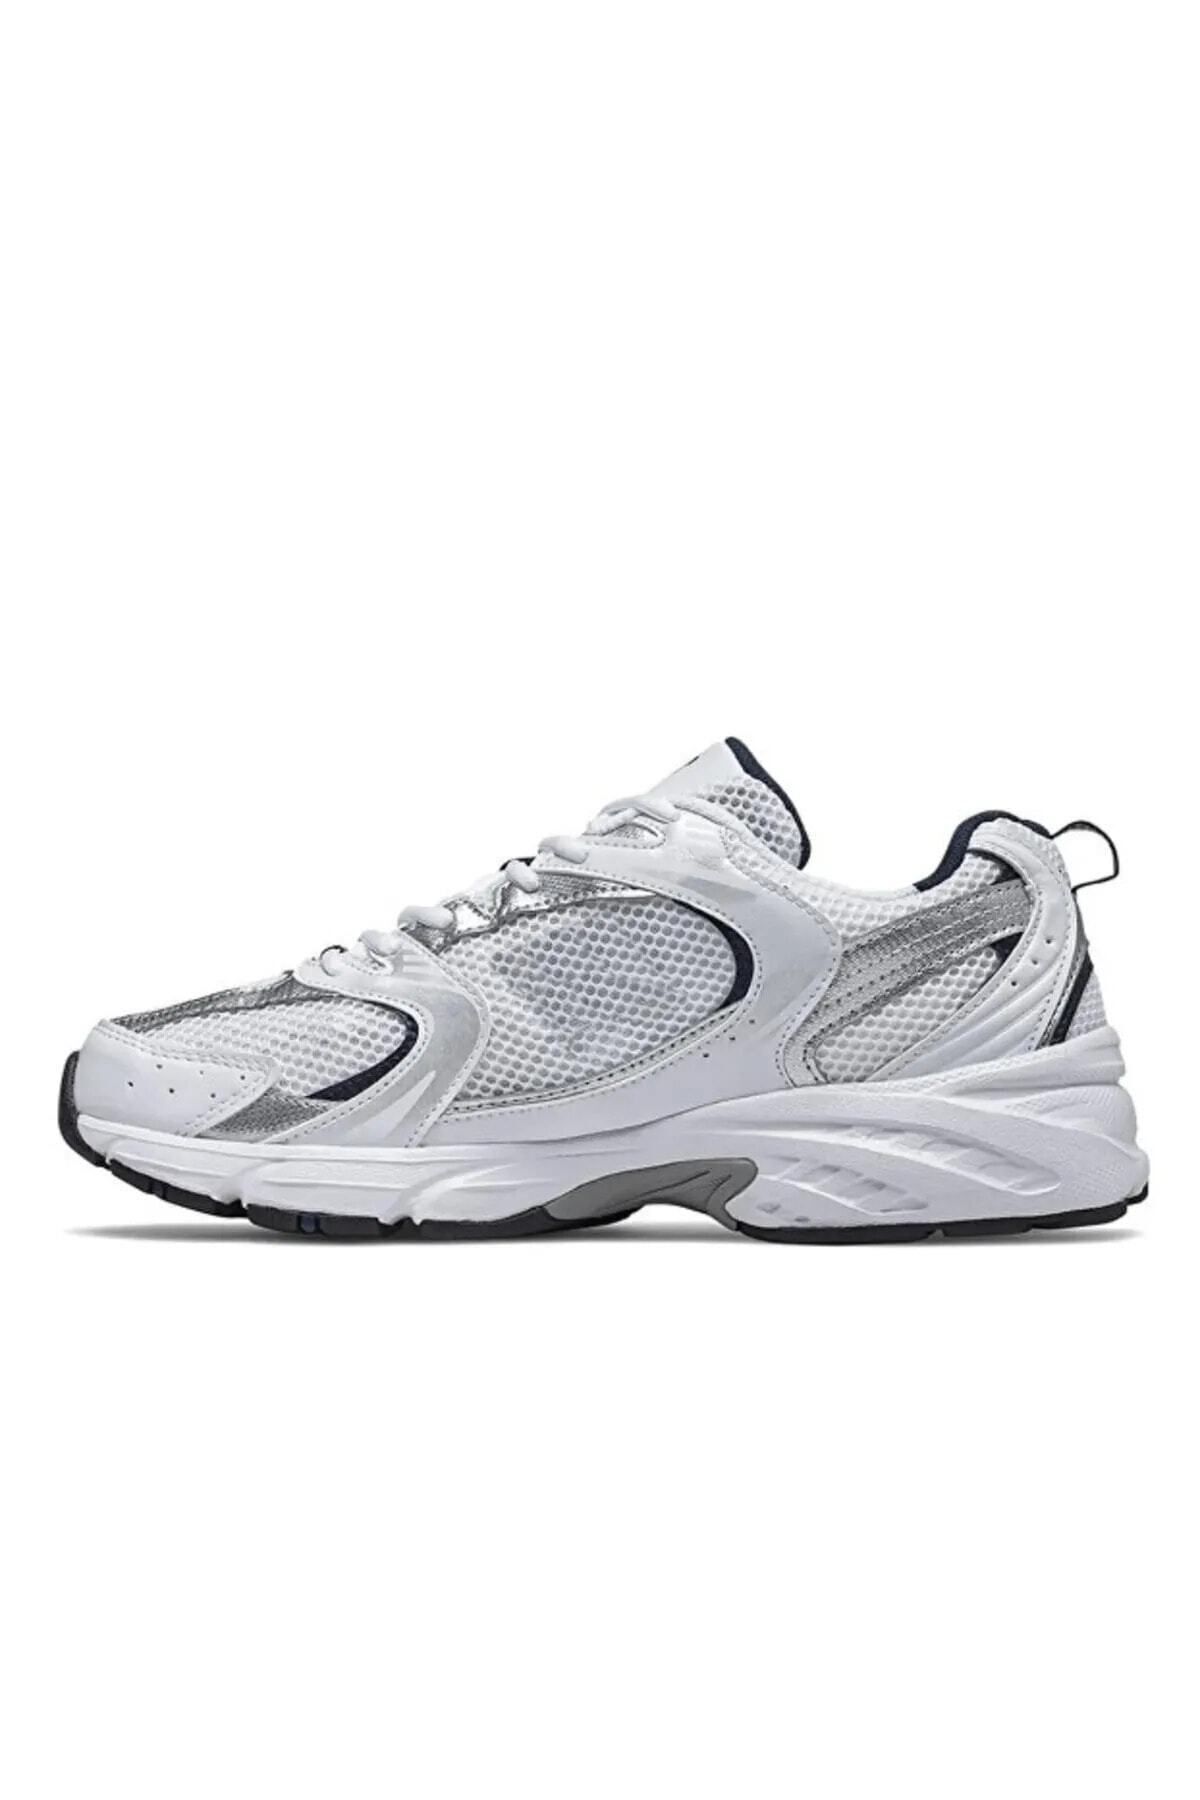 Genel Markalar Stonic530 Unisex Rahat Konforlu Sneaker Günlük Yürüyüş Koşu Spor Ayakkabısı